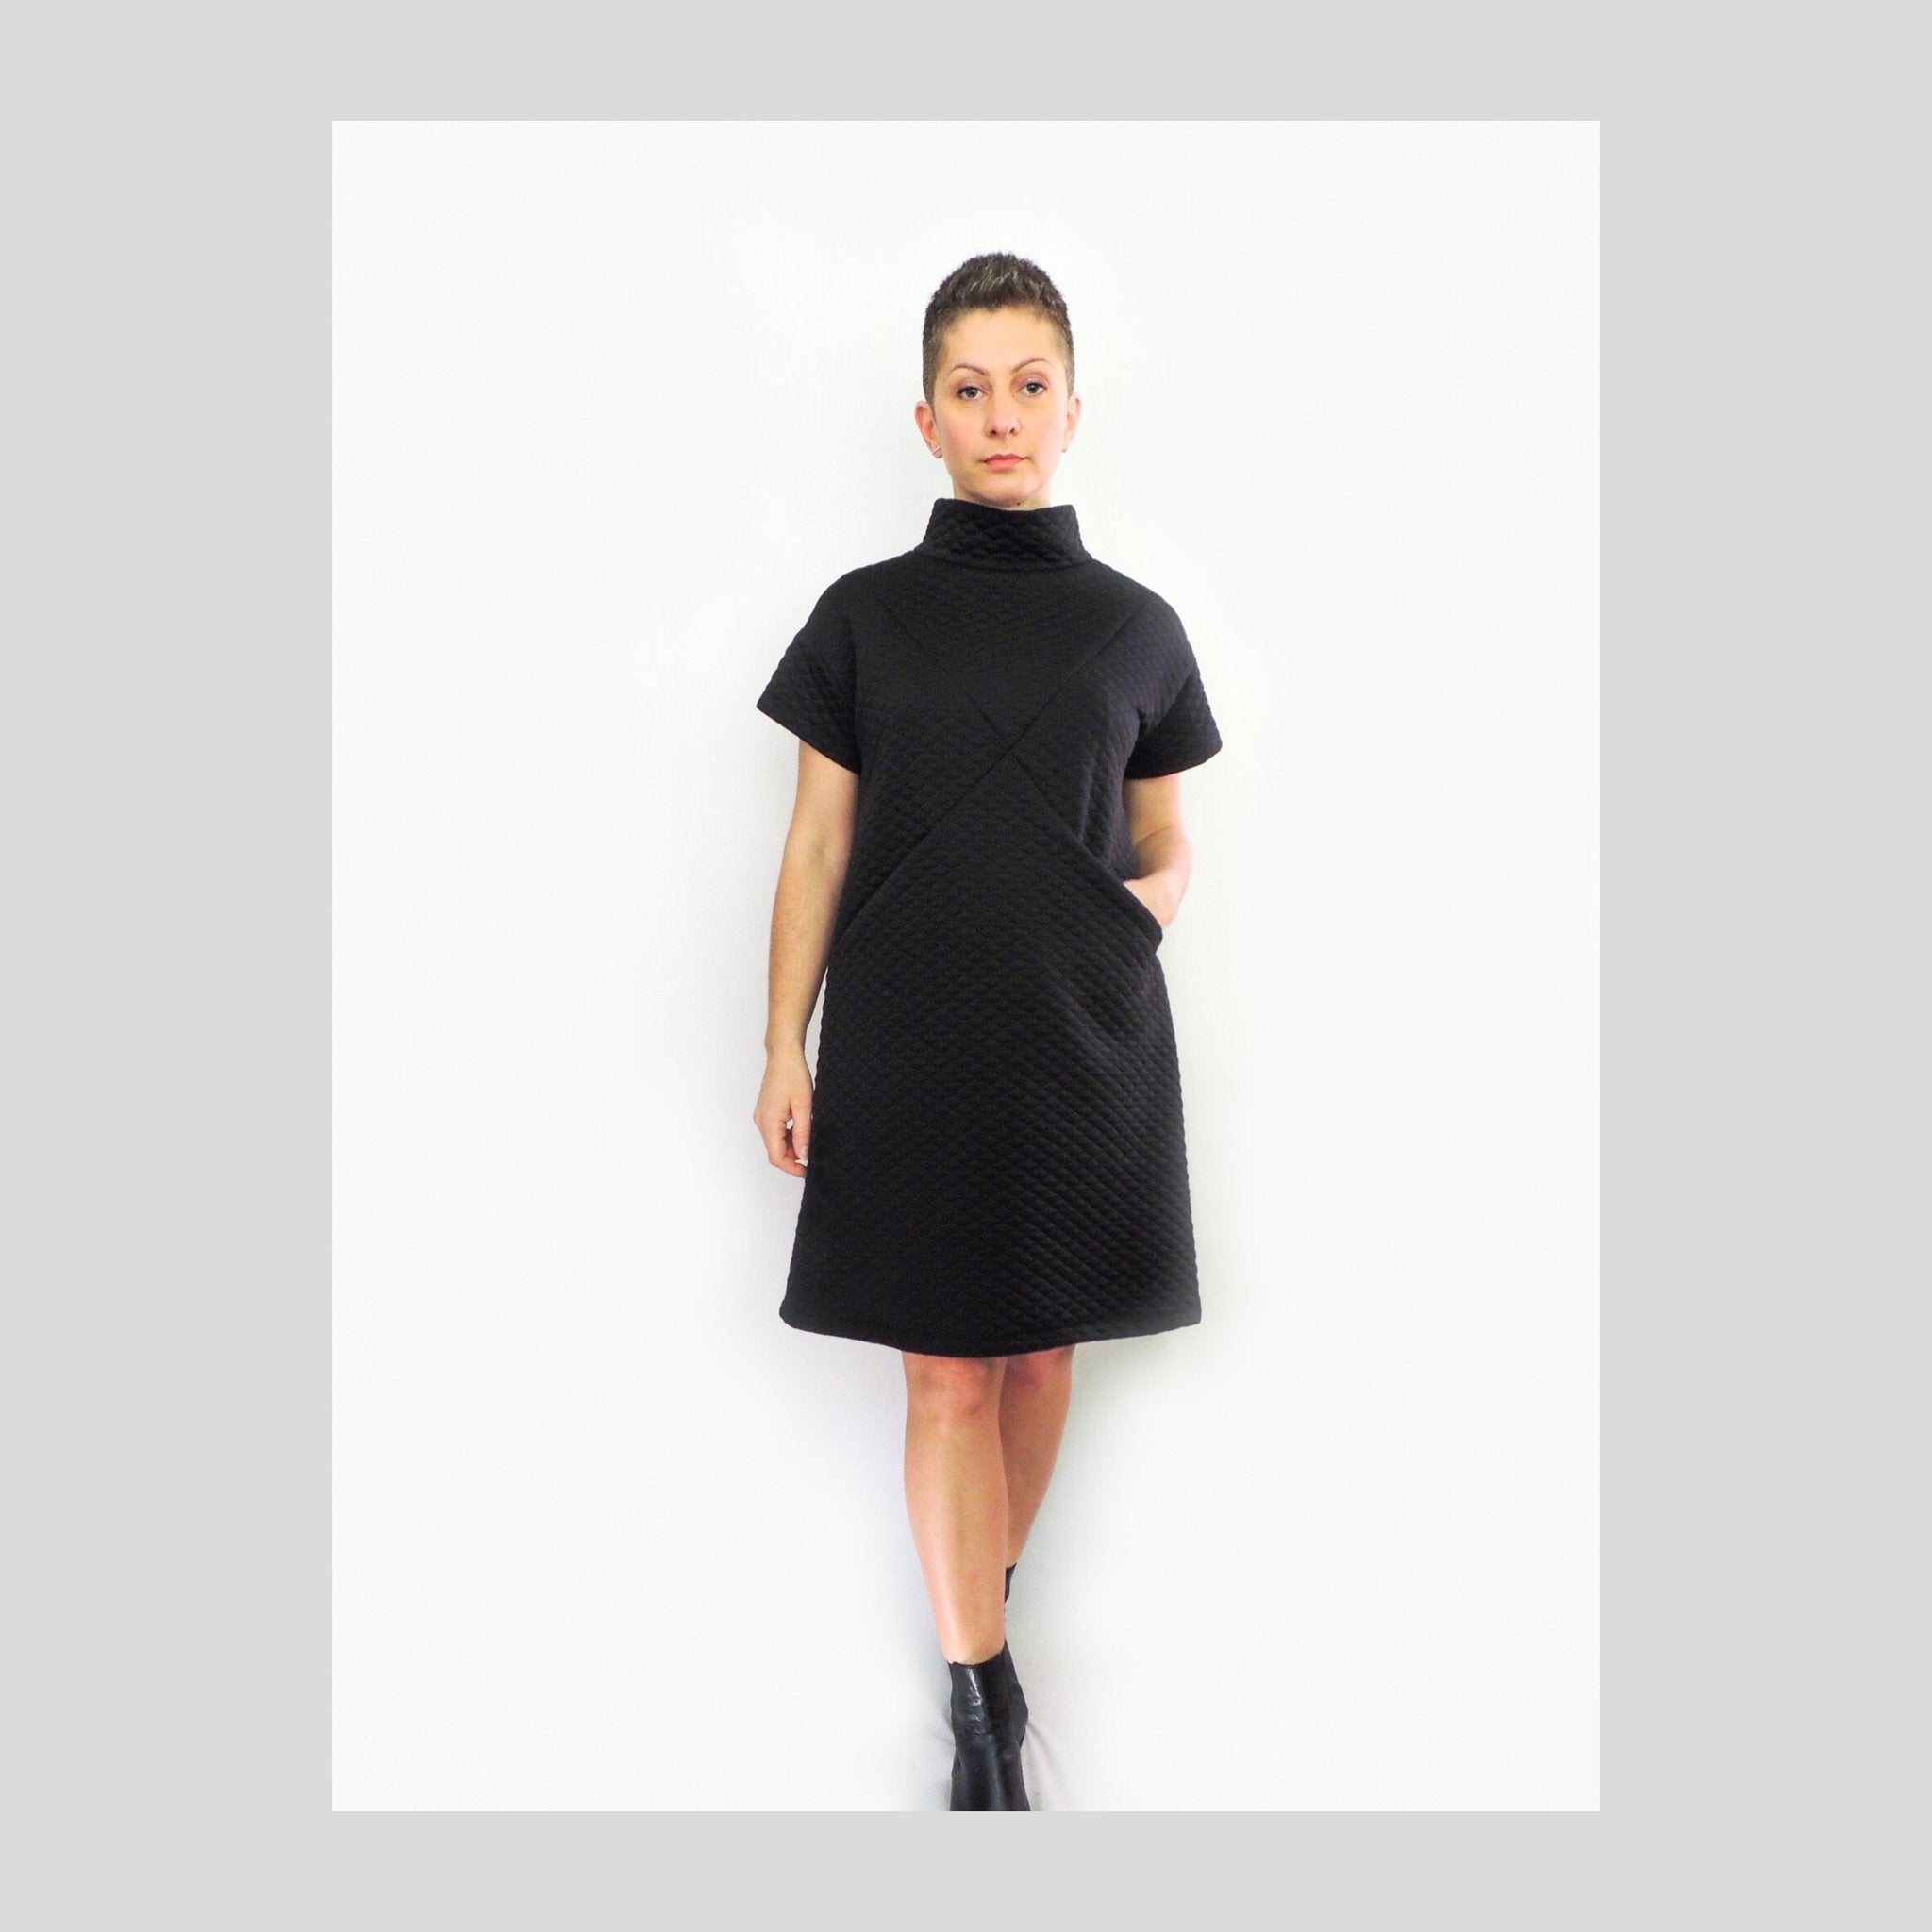 Dhurata Davies - Maxine Dress - Paper Sewing Pattern